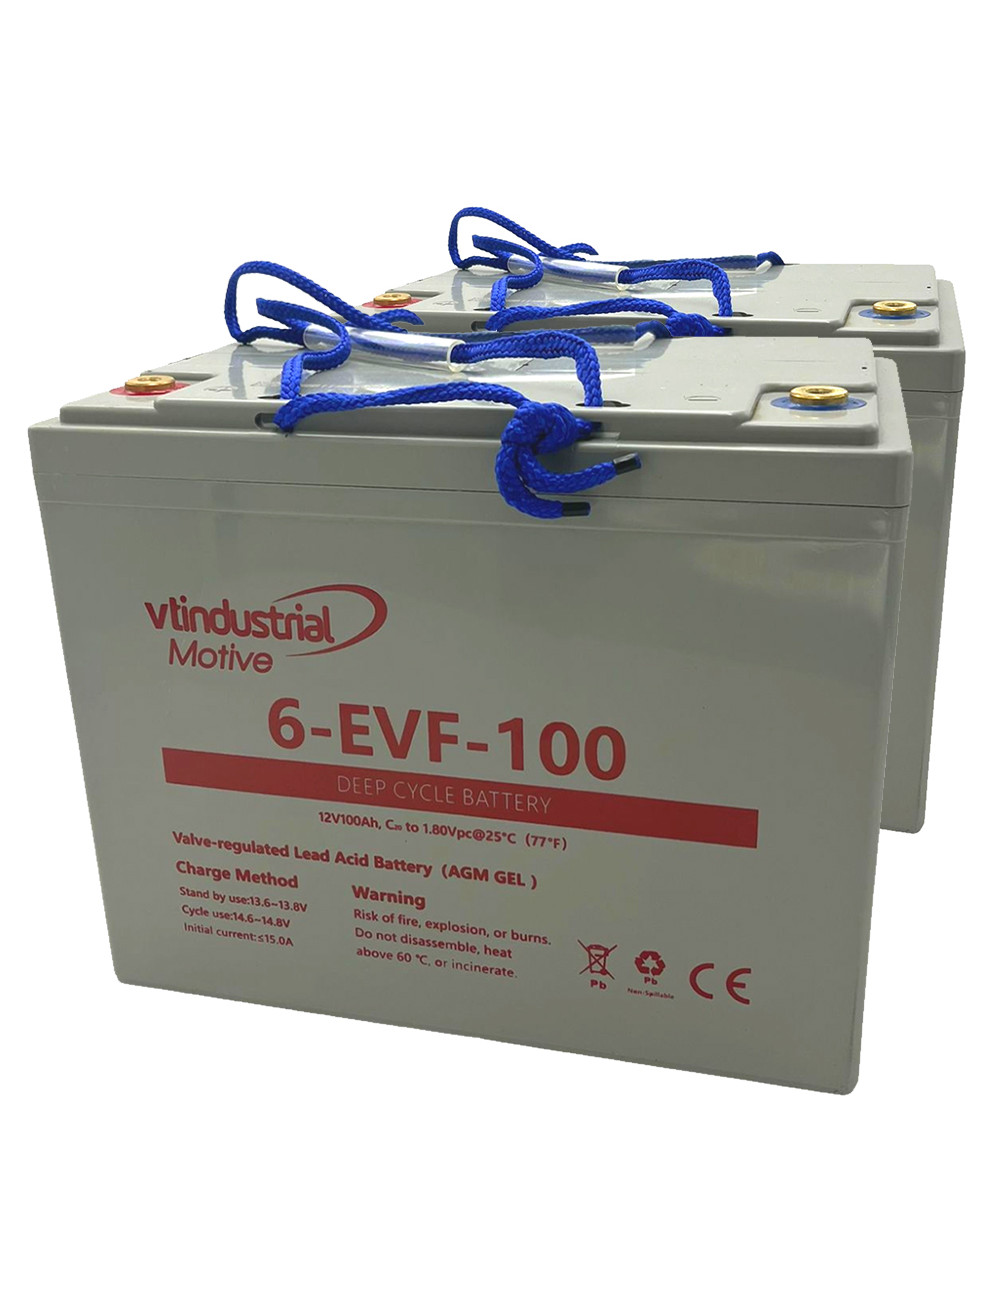 Pack 2 baterías para apiladores y carretillas ES10 3300 de 12V 100Ah C20 ciclo profundo Industrial Motive 6-EVF-100 - 2x6-EVF-10